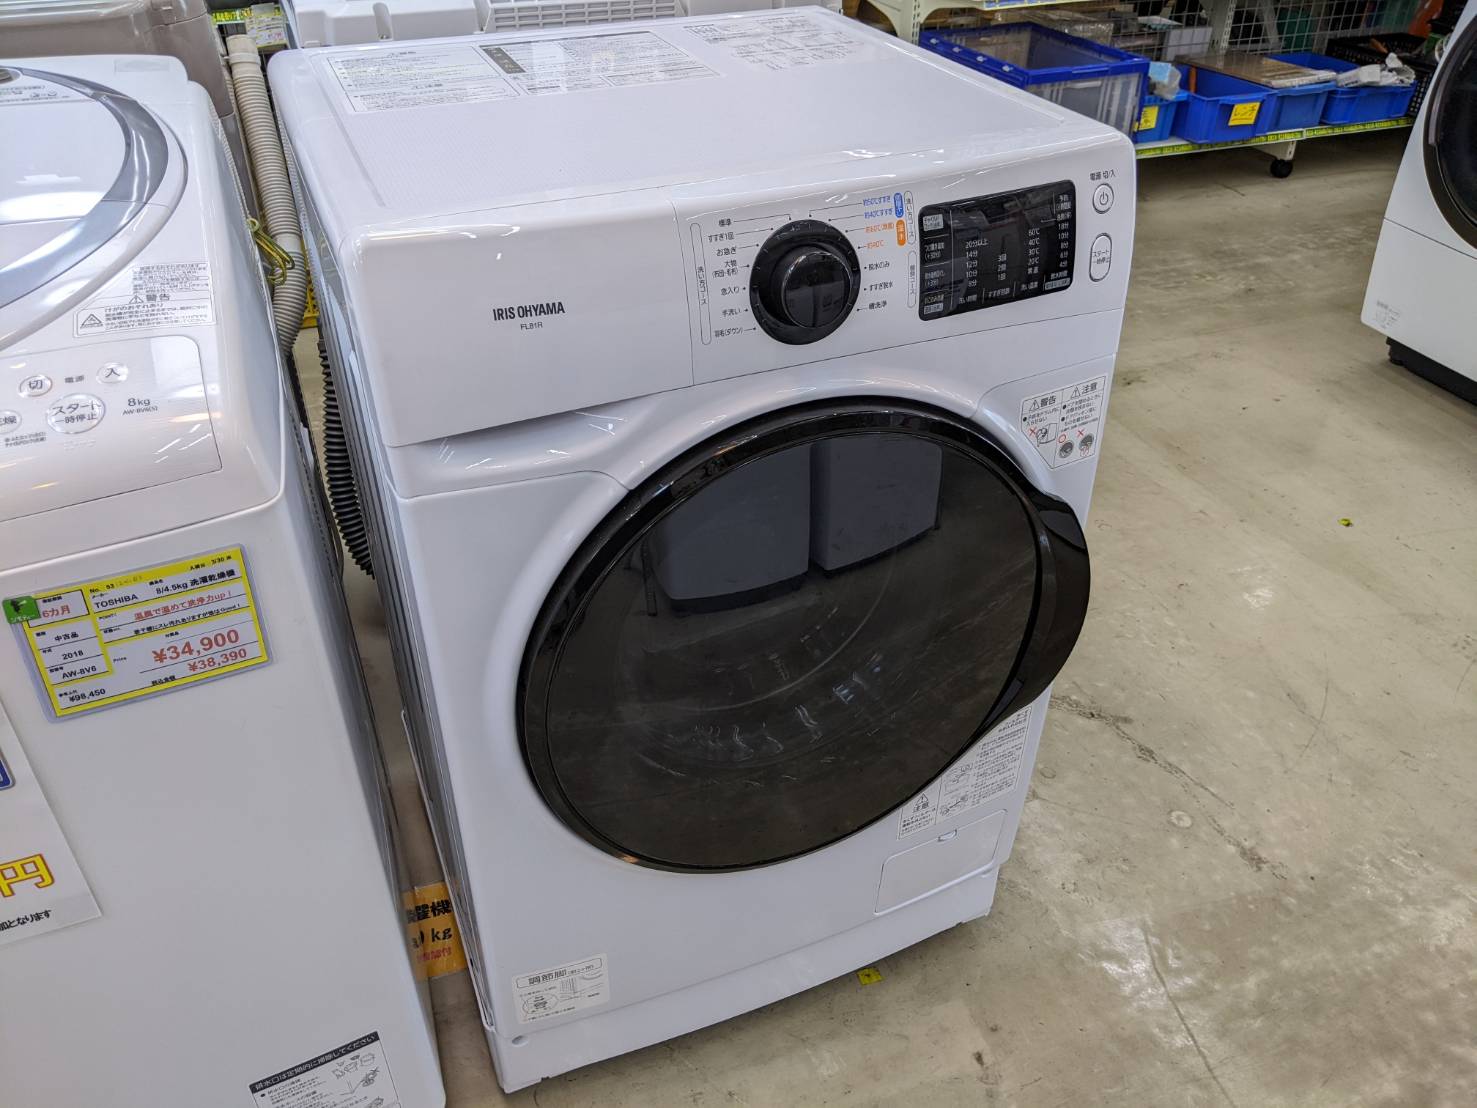 【IRIS OHYAMA ８Kg ドラム式洗濯機 FL81R 2020年式 アイリスオーヤマ】を買取いたしました! - リサイクルマートは現在冷蔵庫の買取、家具の買取強化中です！お気軽にお問い合わせください。